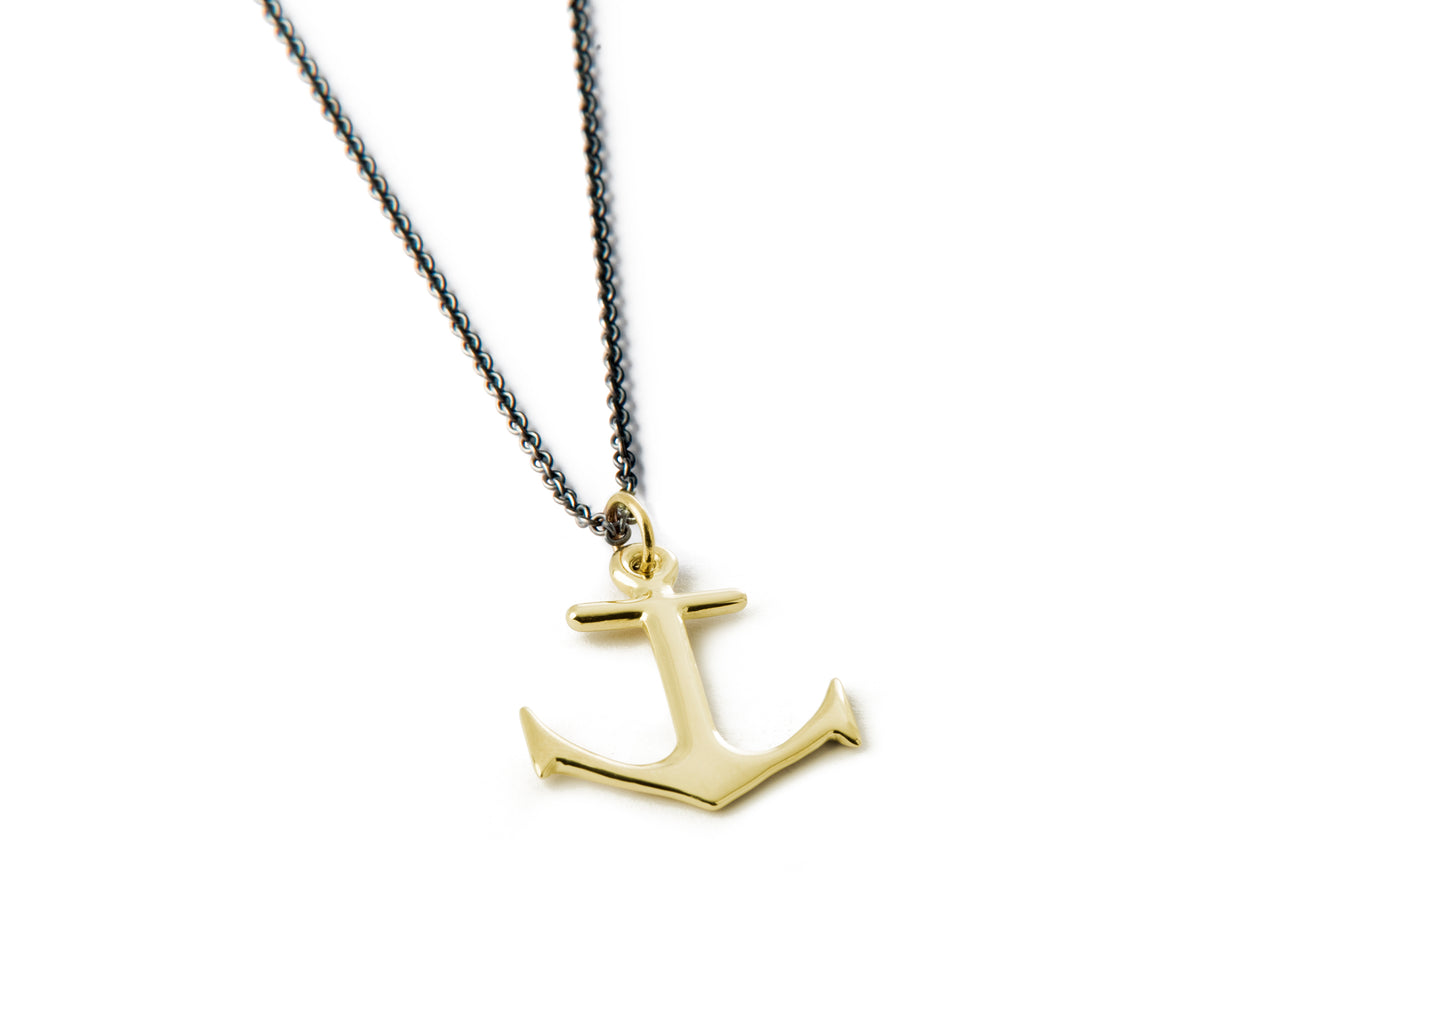 Anchor Necklace - Big gold anchor